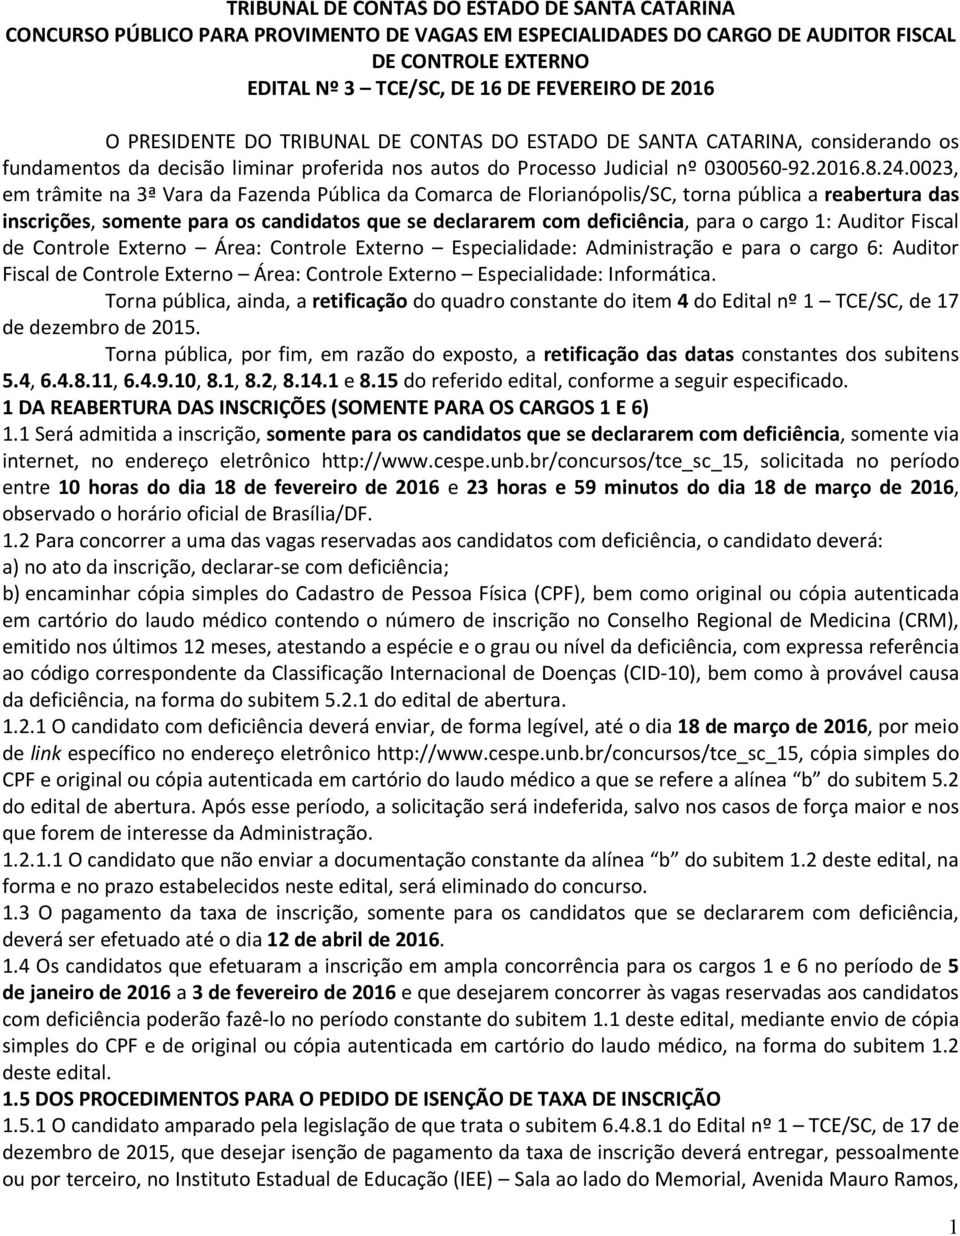 0023, em trâmite na 3ª Vara da Fazenda Pública da Comarca de Florianópolis/SC, torna pública a reabertura das inscrições, somente para os candidatos que se declararem com deficiência, para o cargo 1: